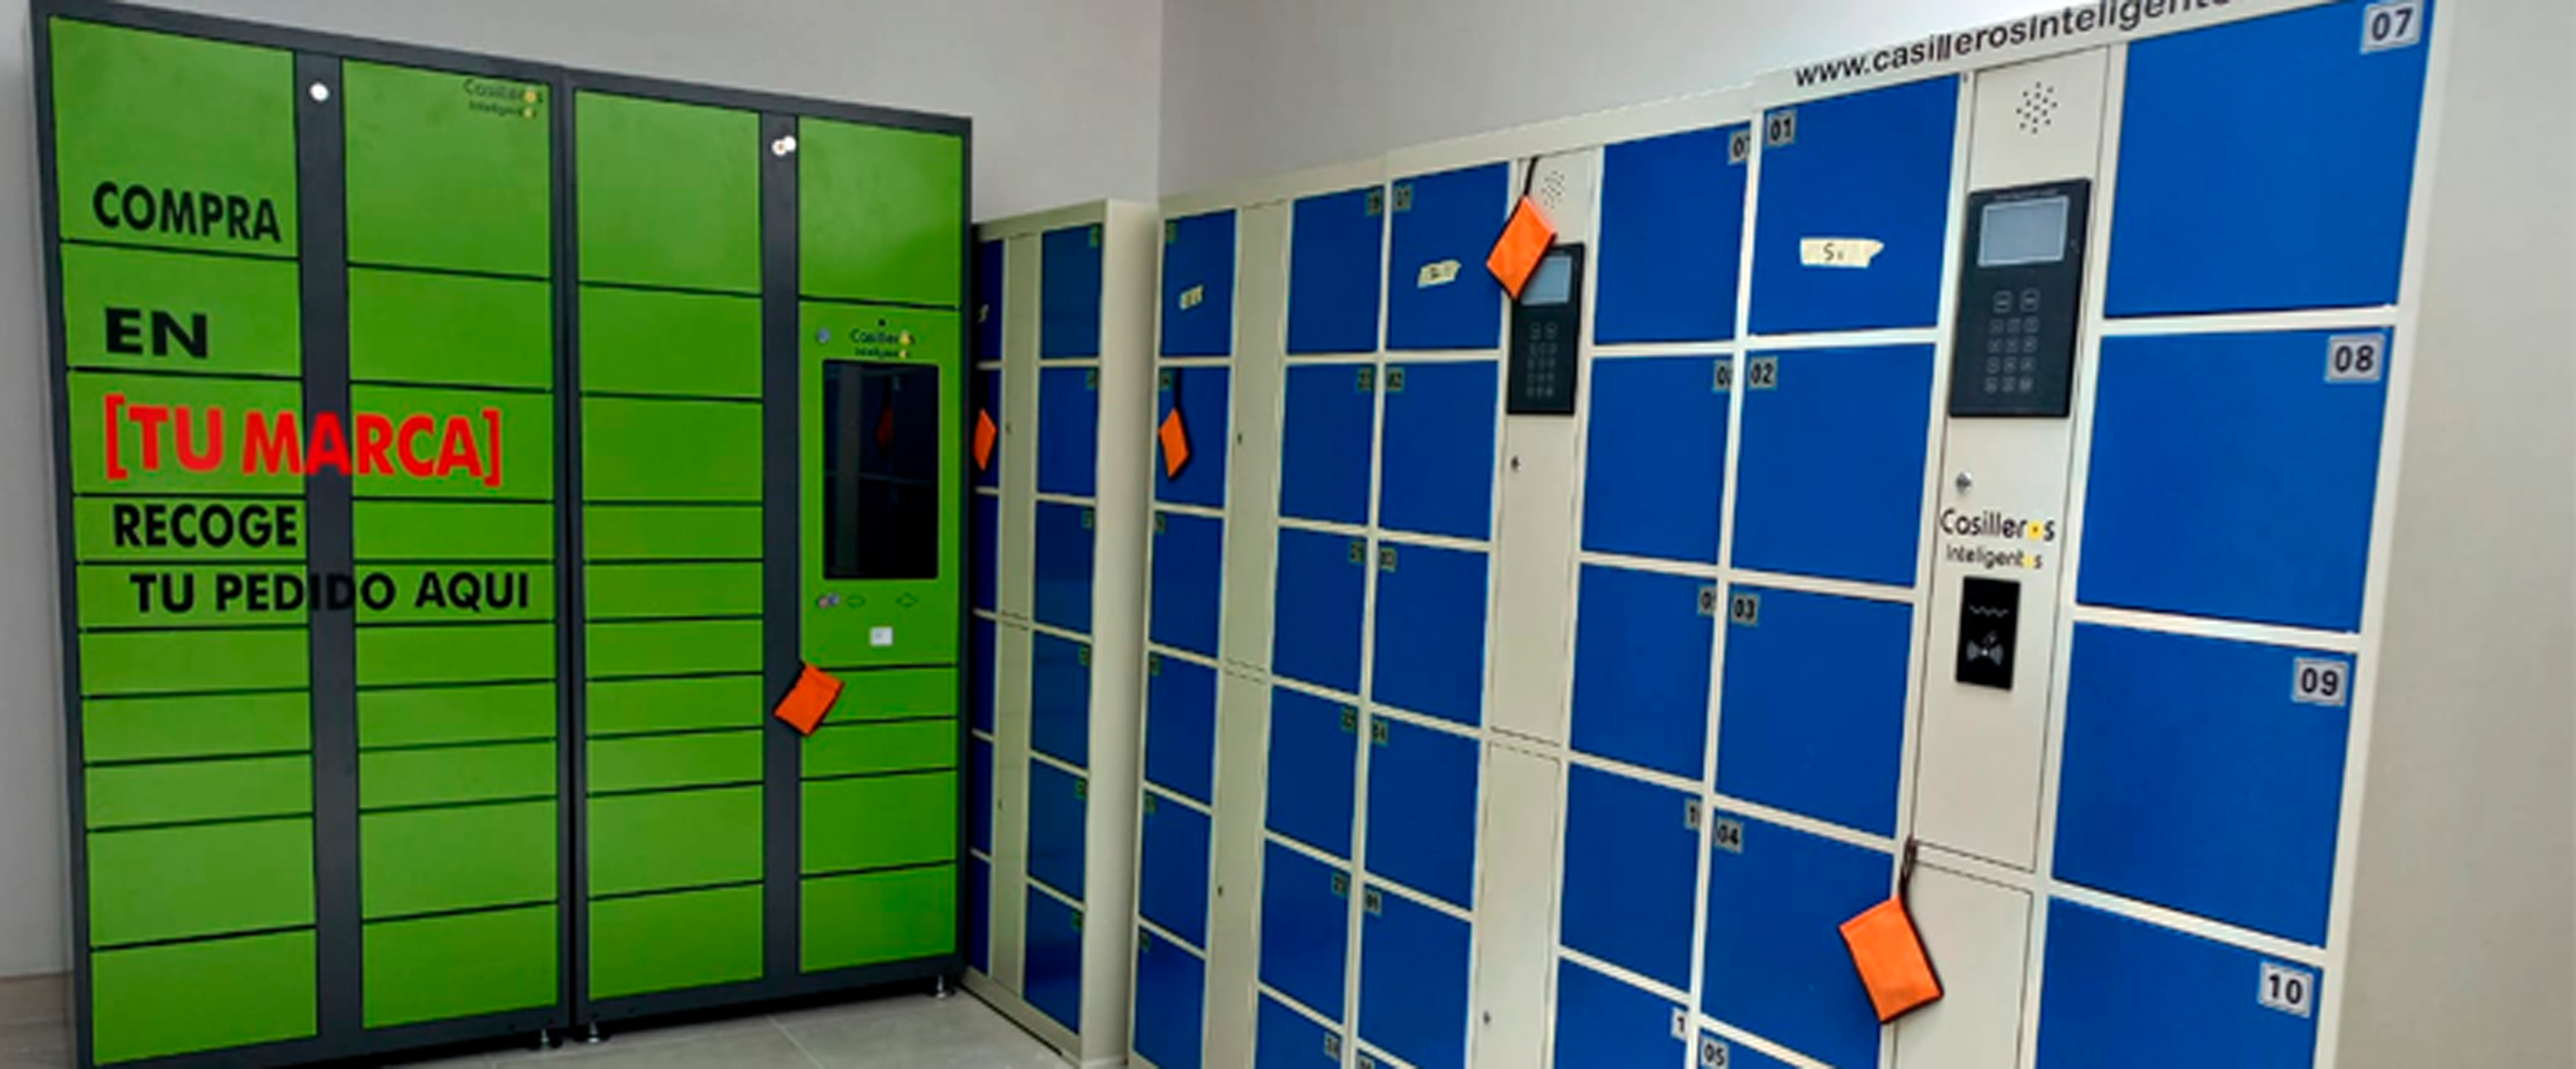 diferencias smart lockers constructores edificios marcas